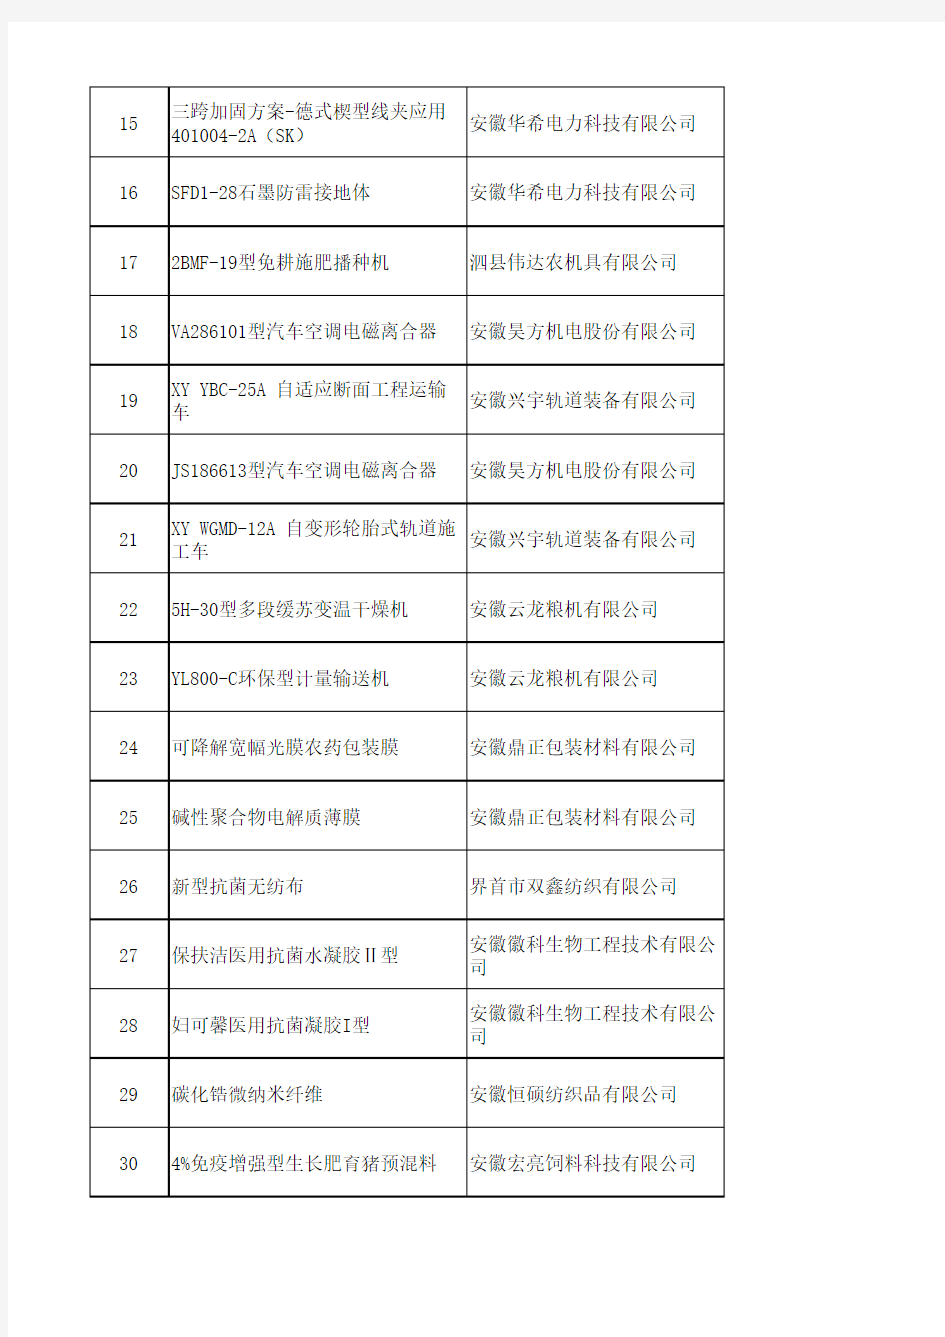 2019年度安徽省新产品名单(第一批)